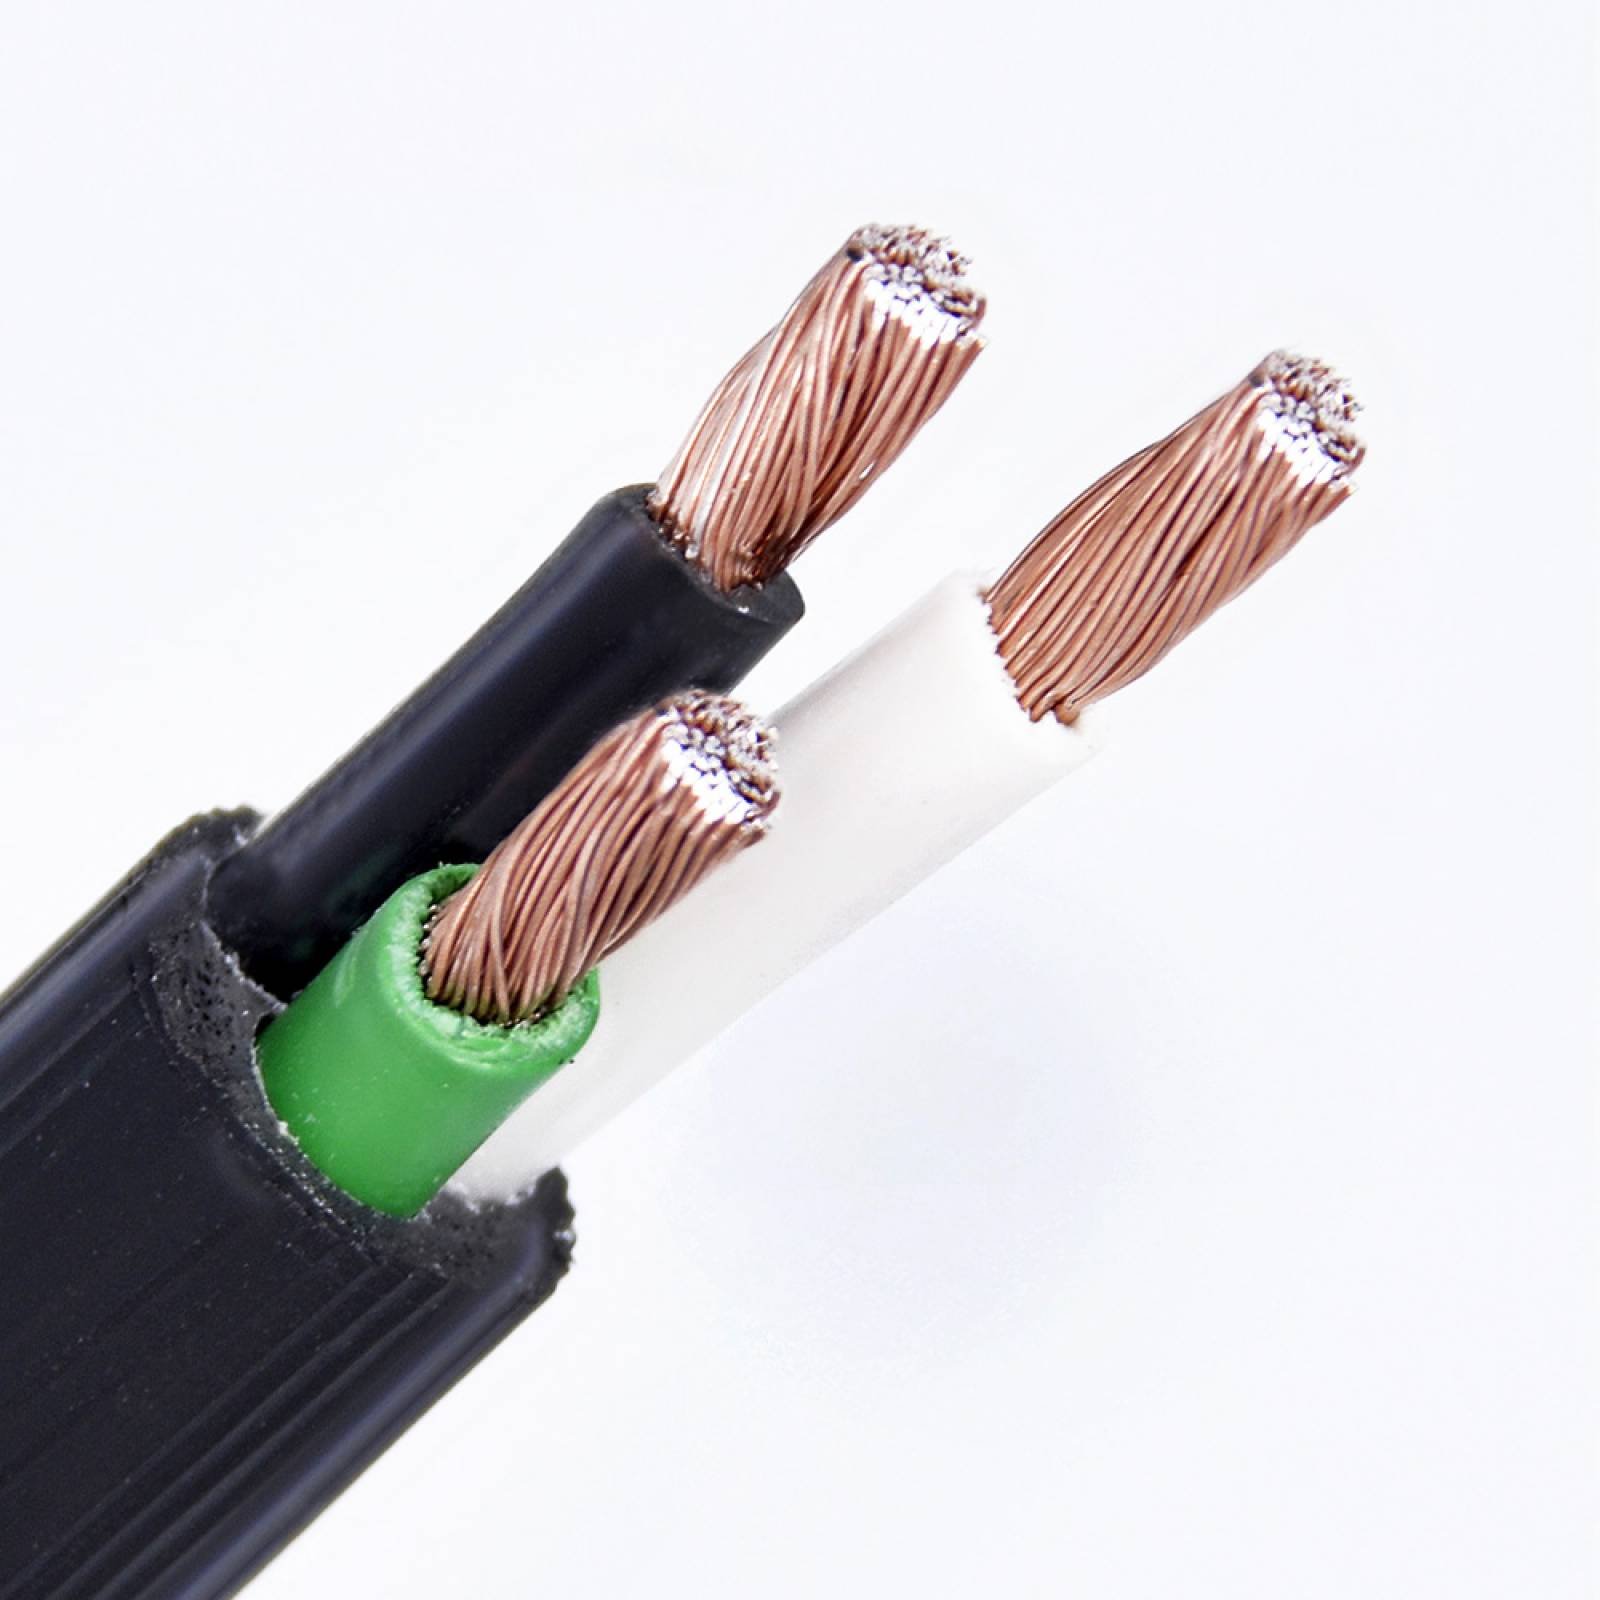 Cable Eléctrico Uso Rudo Cca Cal. 3 X 12 100 Mt Surtek 